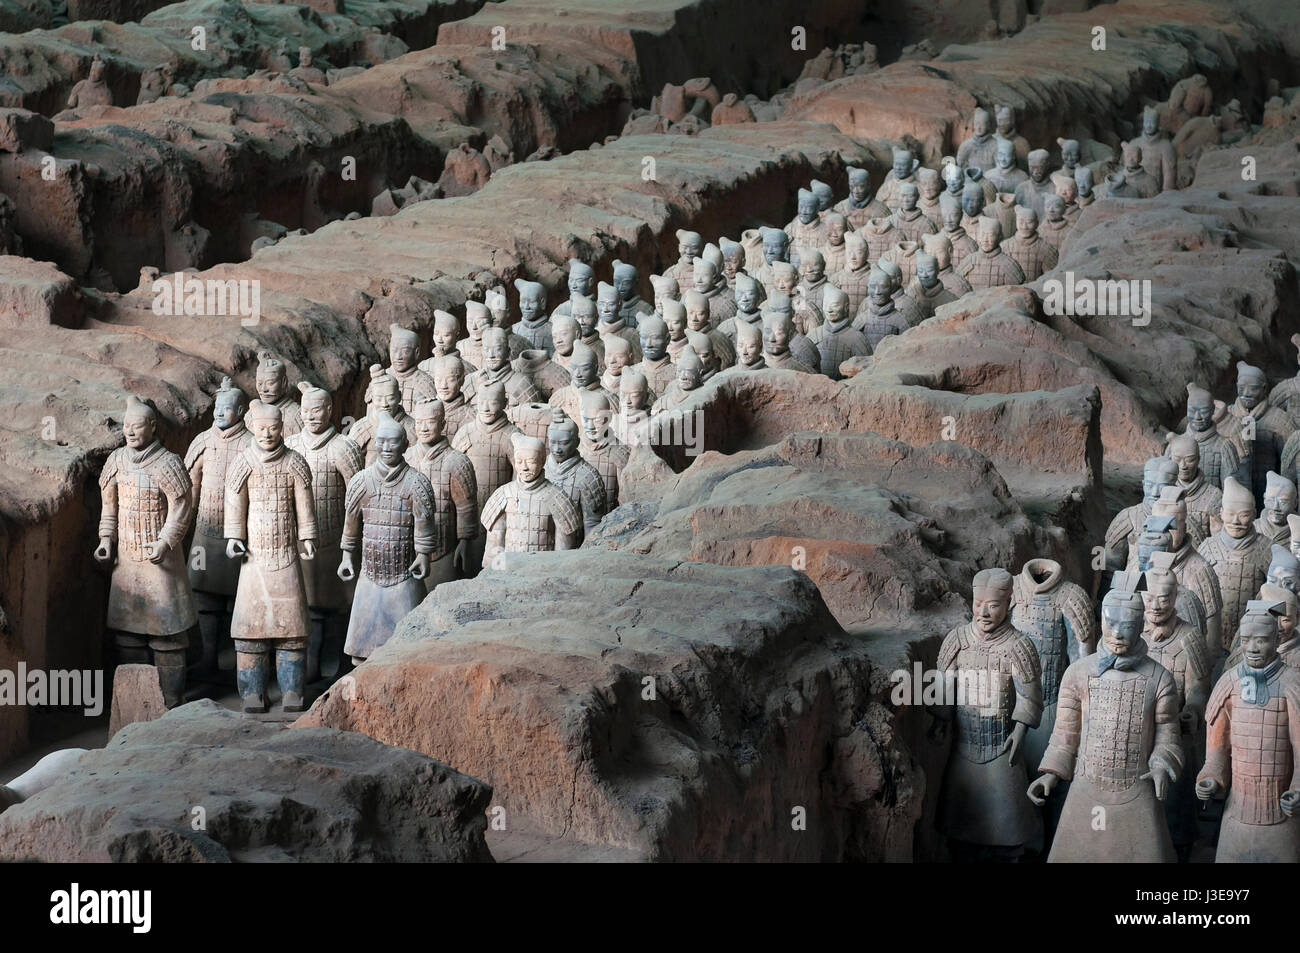 Xian, Cina - 6 Agosto 2012: ranghi dell esercito di guerrieri di terracotta nel sito archeologico nei pressi di Xian, Cina Foto Stock